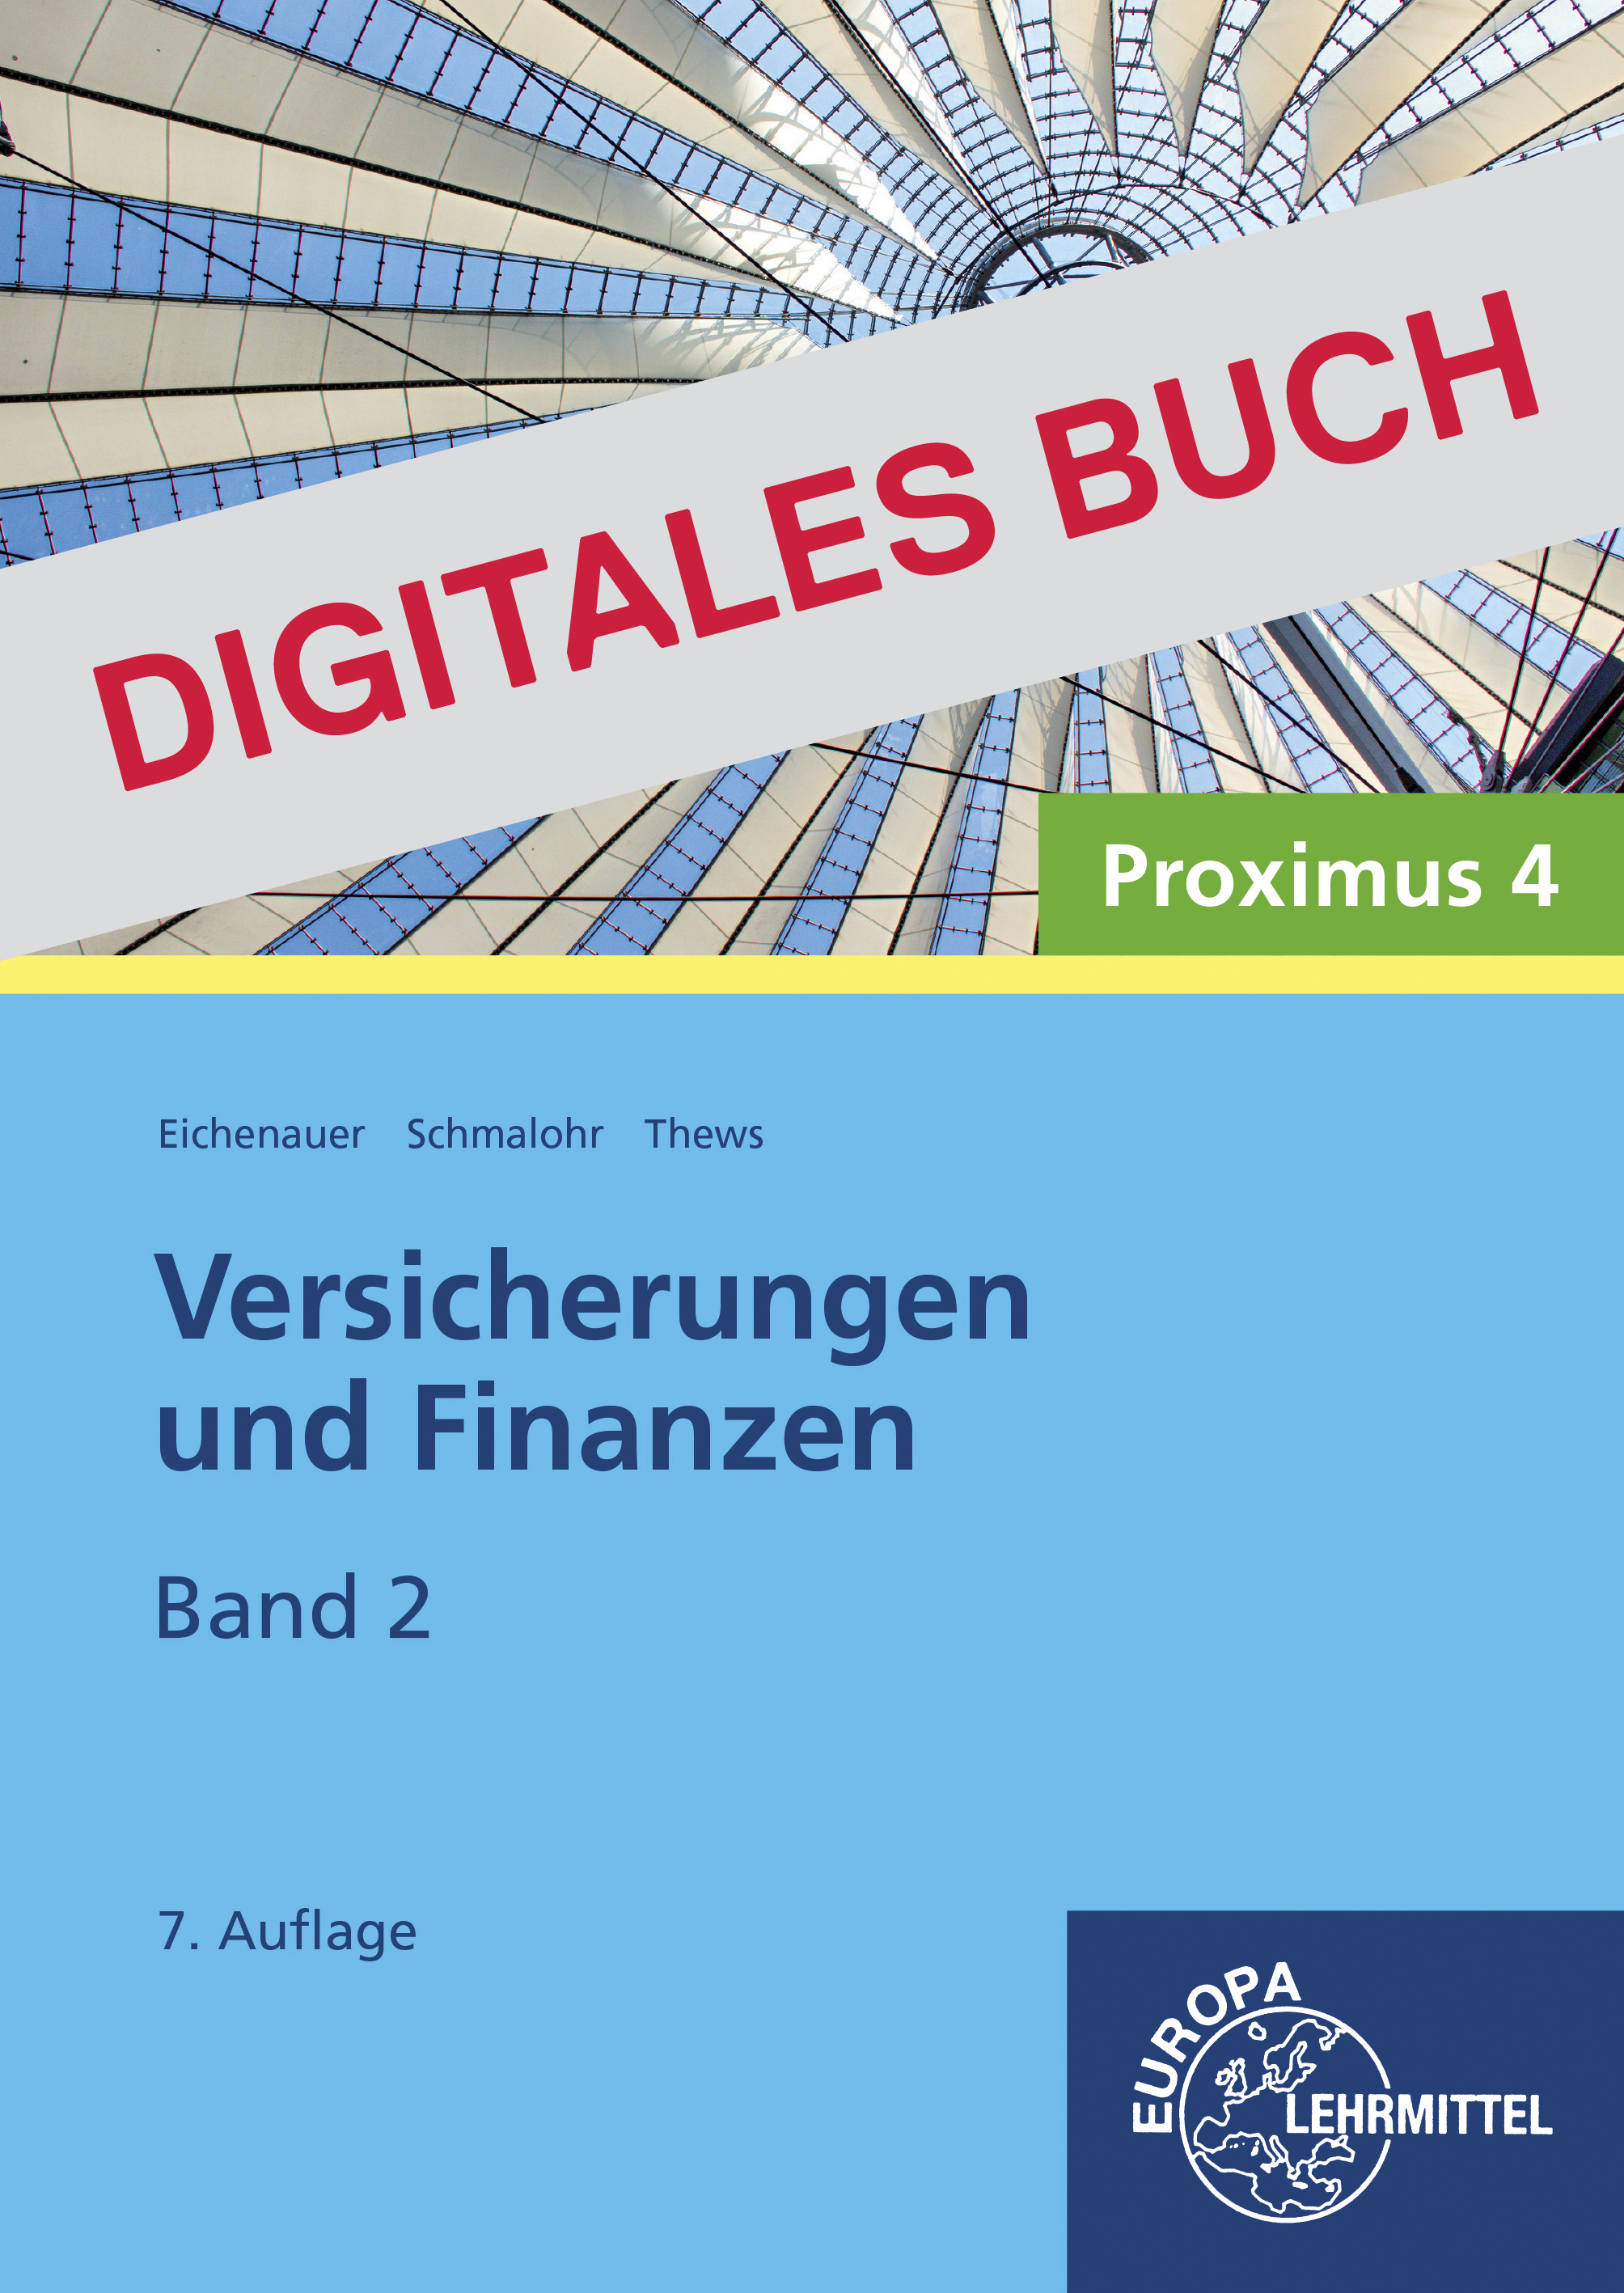 Versicherungen und Finanzen, Band 2 - Proximus 4 - Digitales Buch